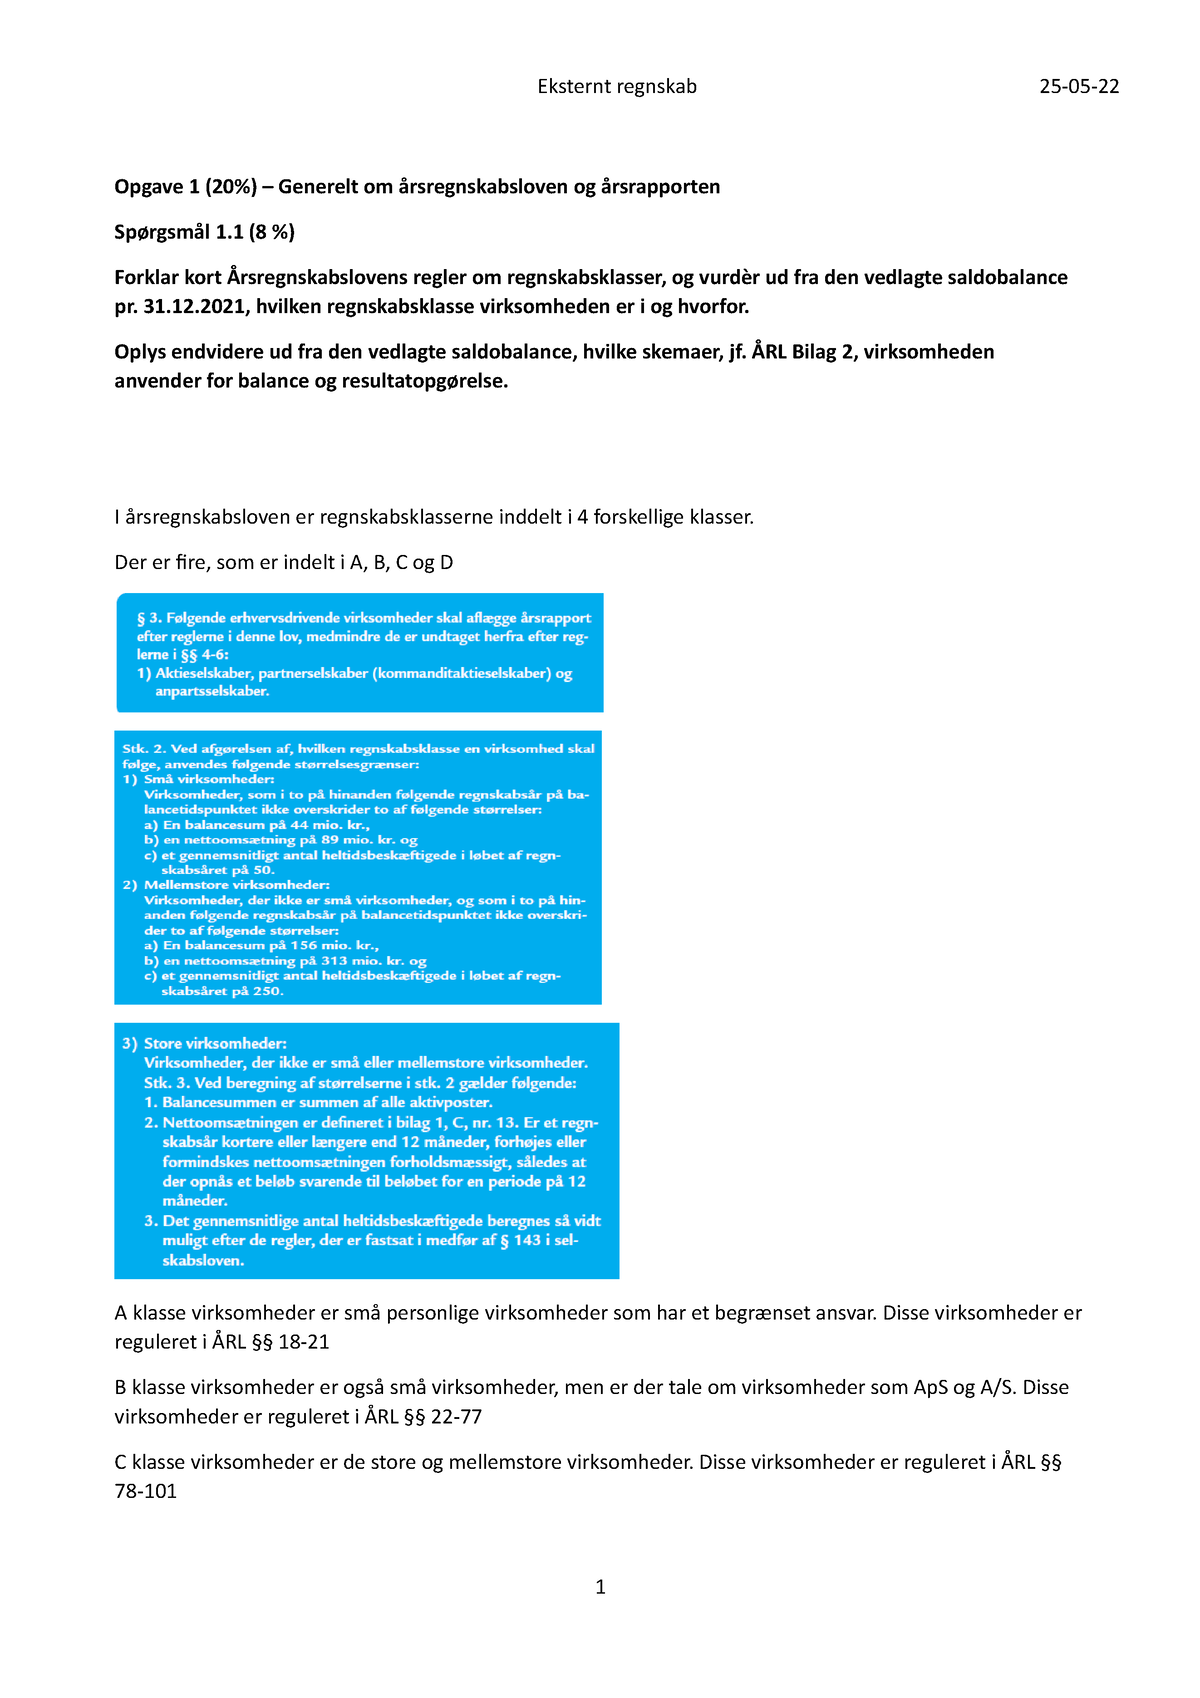 Eksamen Ekstrent regnskab - Opgave 1 (20%) – om årsregnskabsloven og årsrapporten Studocu